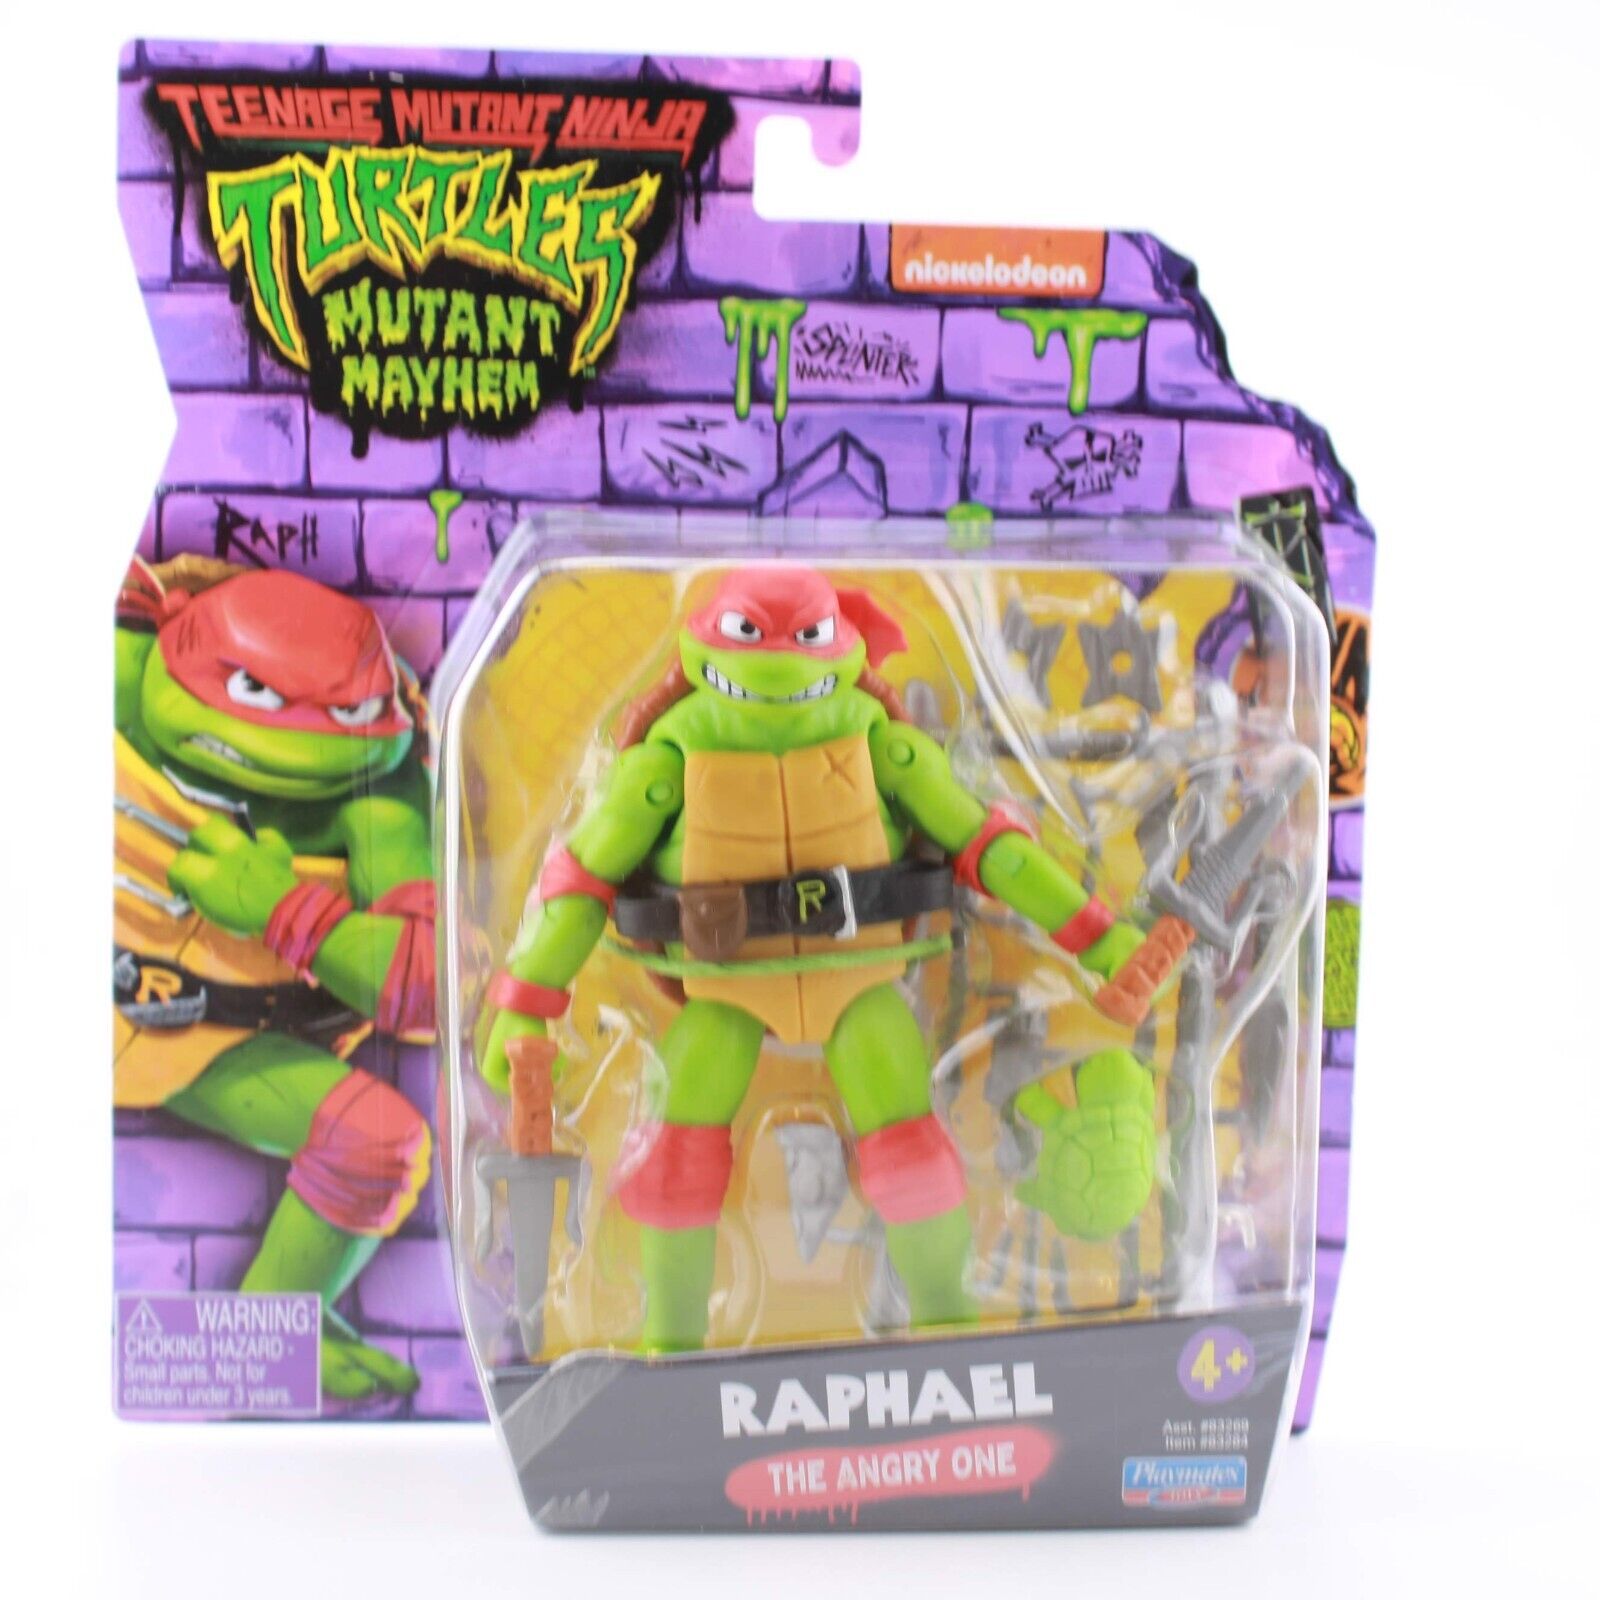 Teenage Mutant Ninja Turtles: Mutant Mayhem Raphael - Movie Figure 4.6”